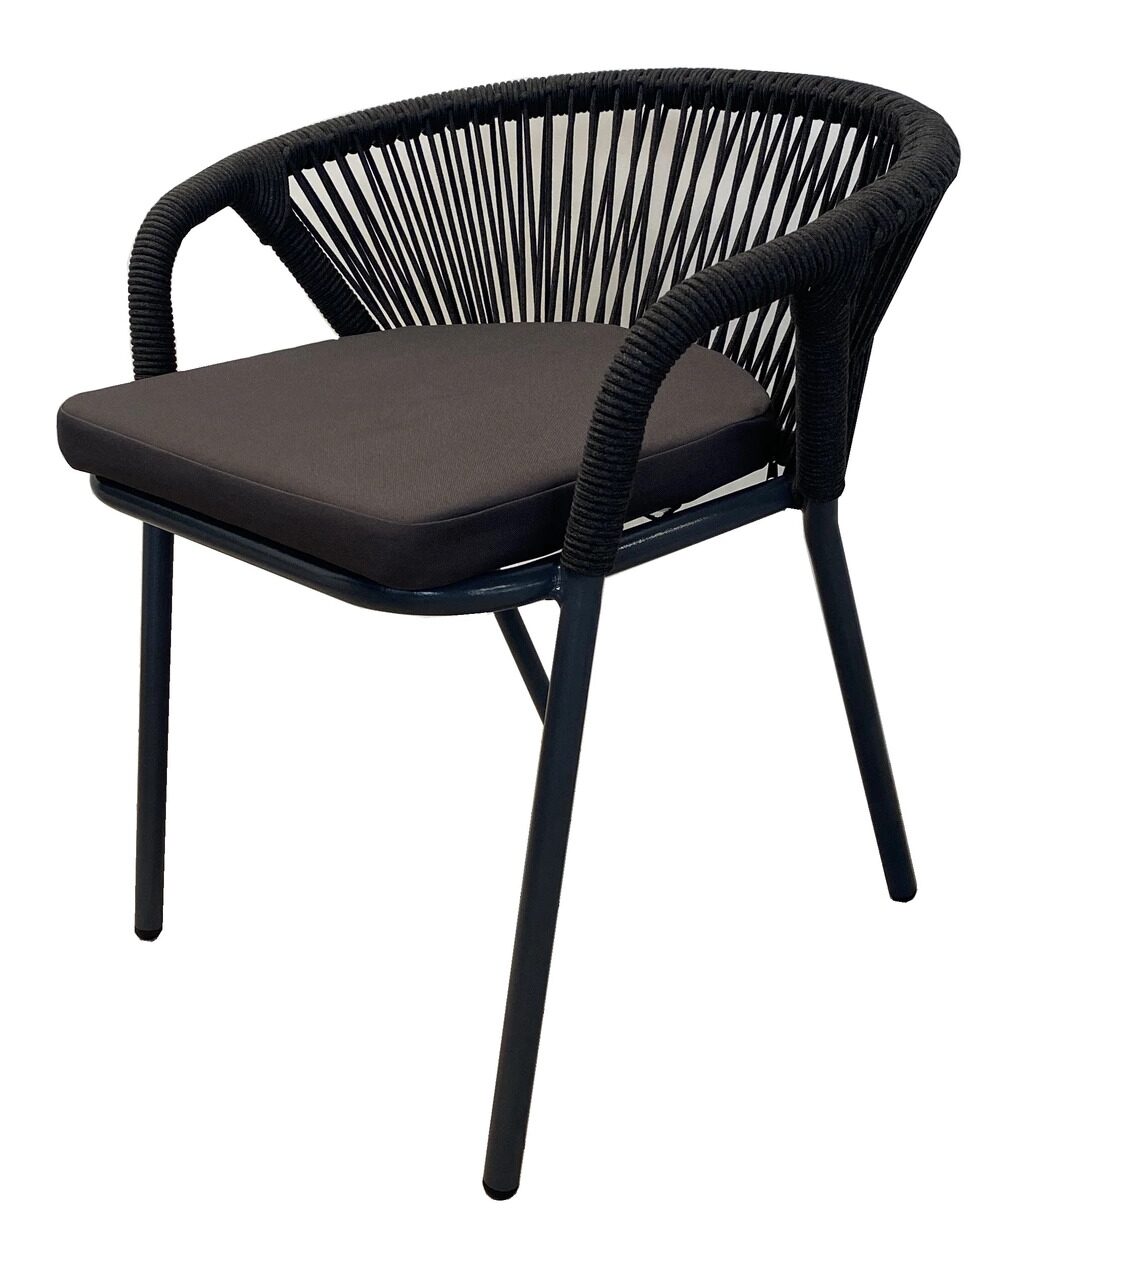 Женева плетеный стул из синтетических лент, цвет темно-серый, круглая веревка